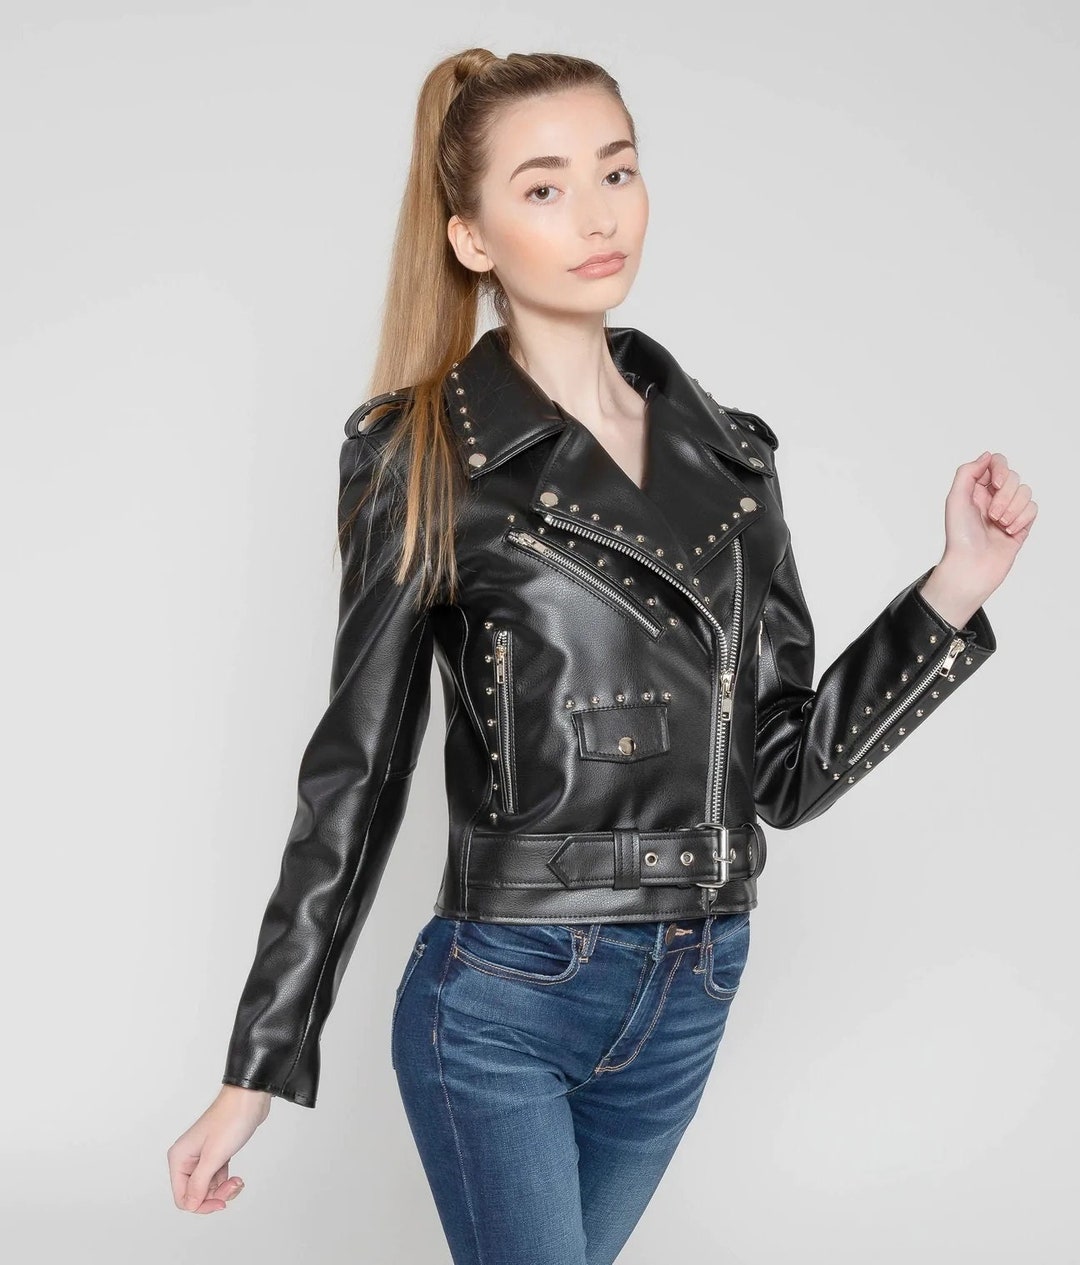 Ladies Genuine Leather Jacket Studded Motorcycle Style - Etsy